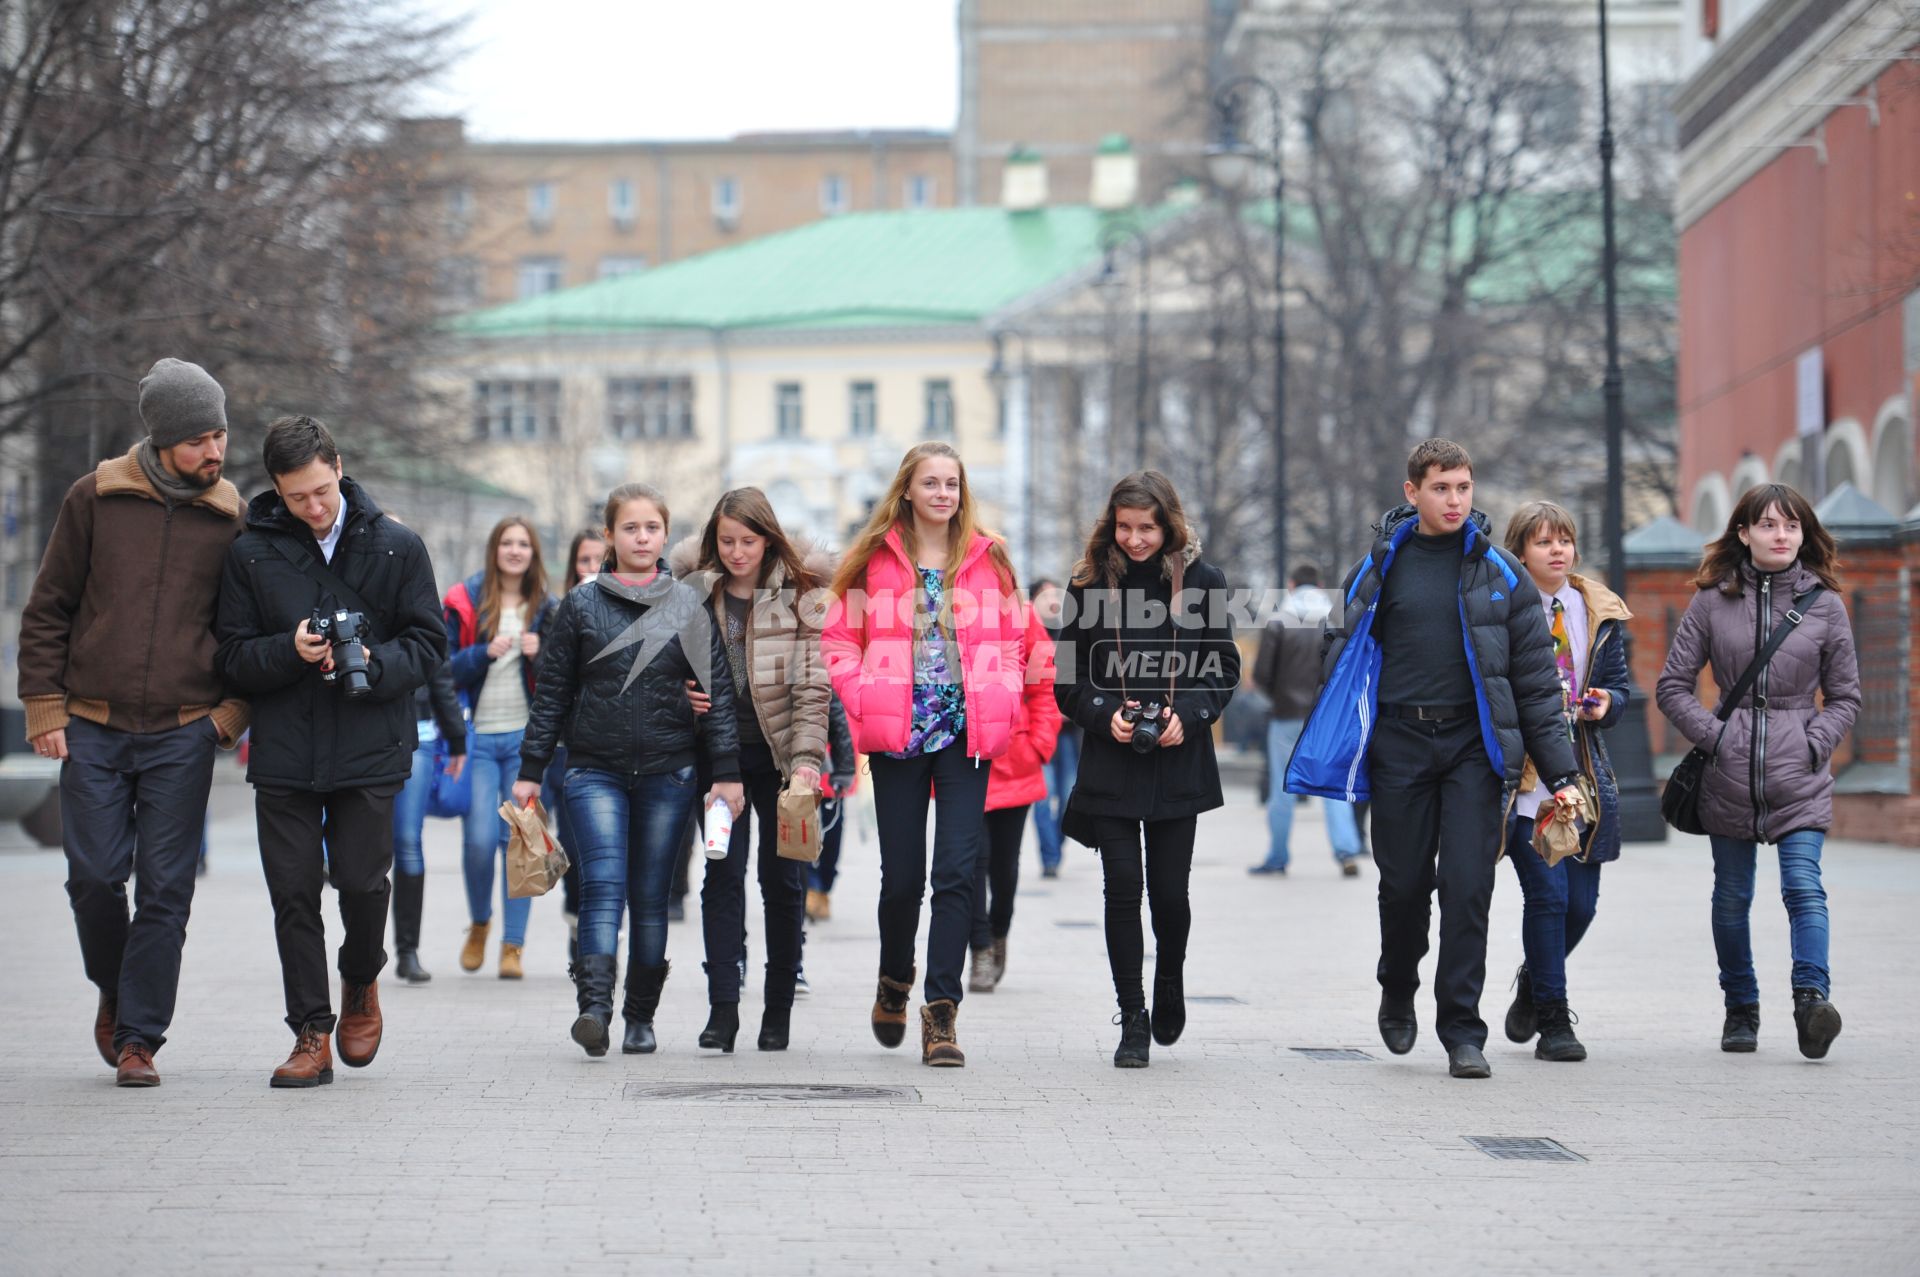 Открытие новой пешеходной зоны в районе `Замоскворечье`. Лаврушинский переулок. На снимке: подростки идут по улице.